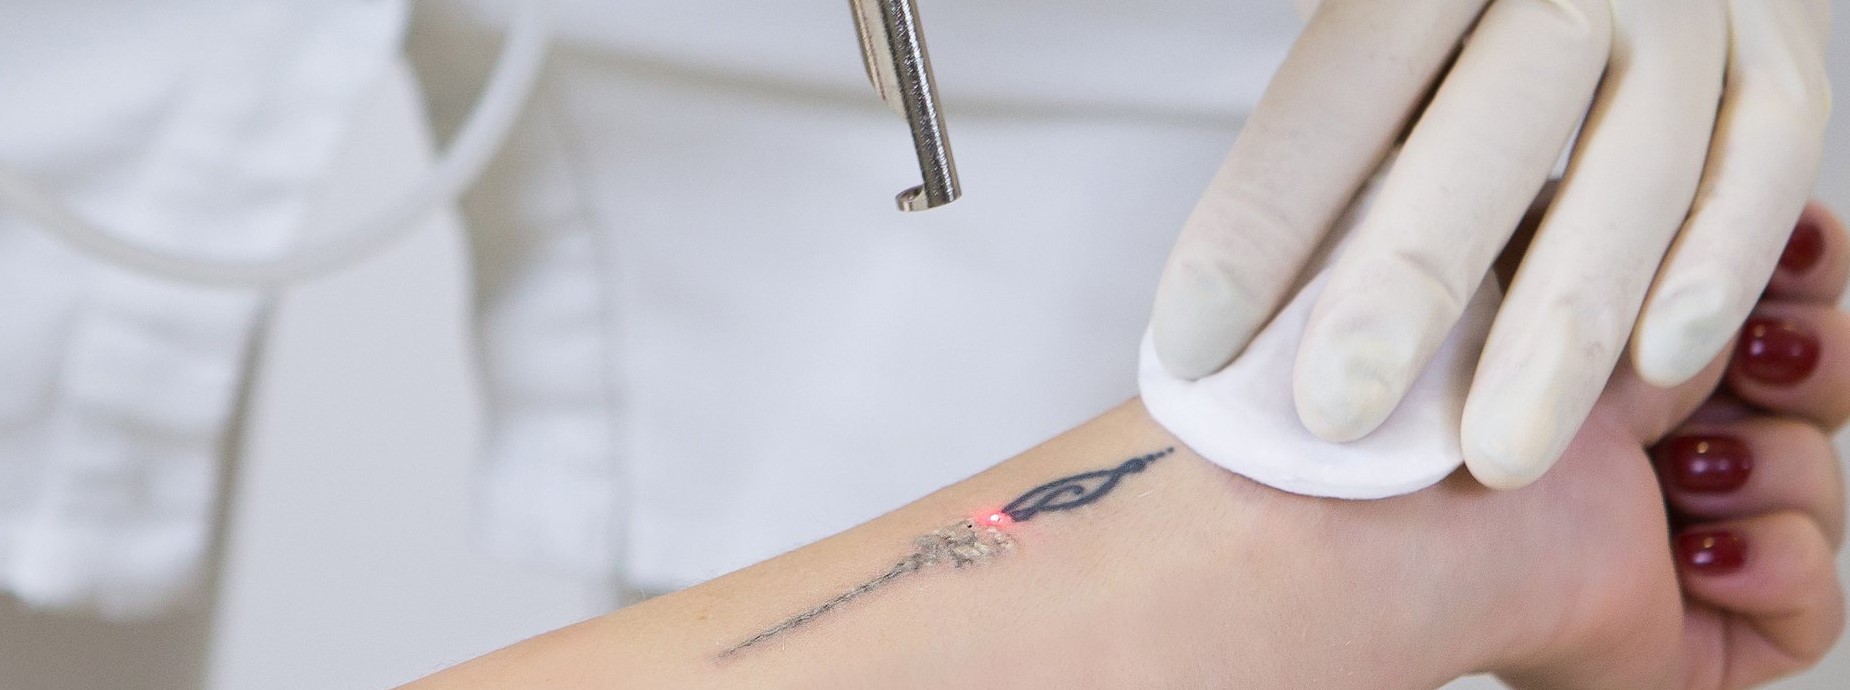 pico laser op arm met tatoeage